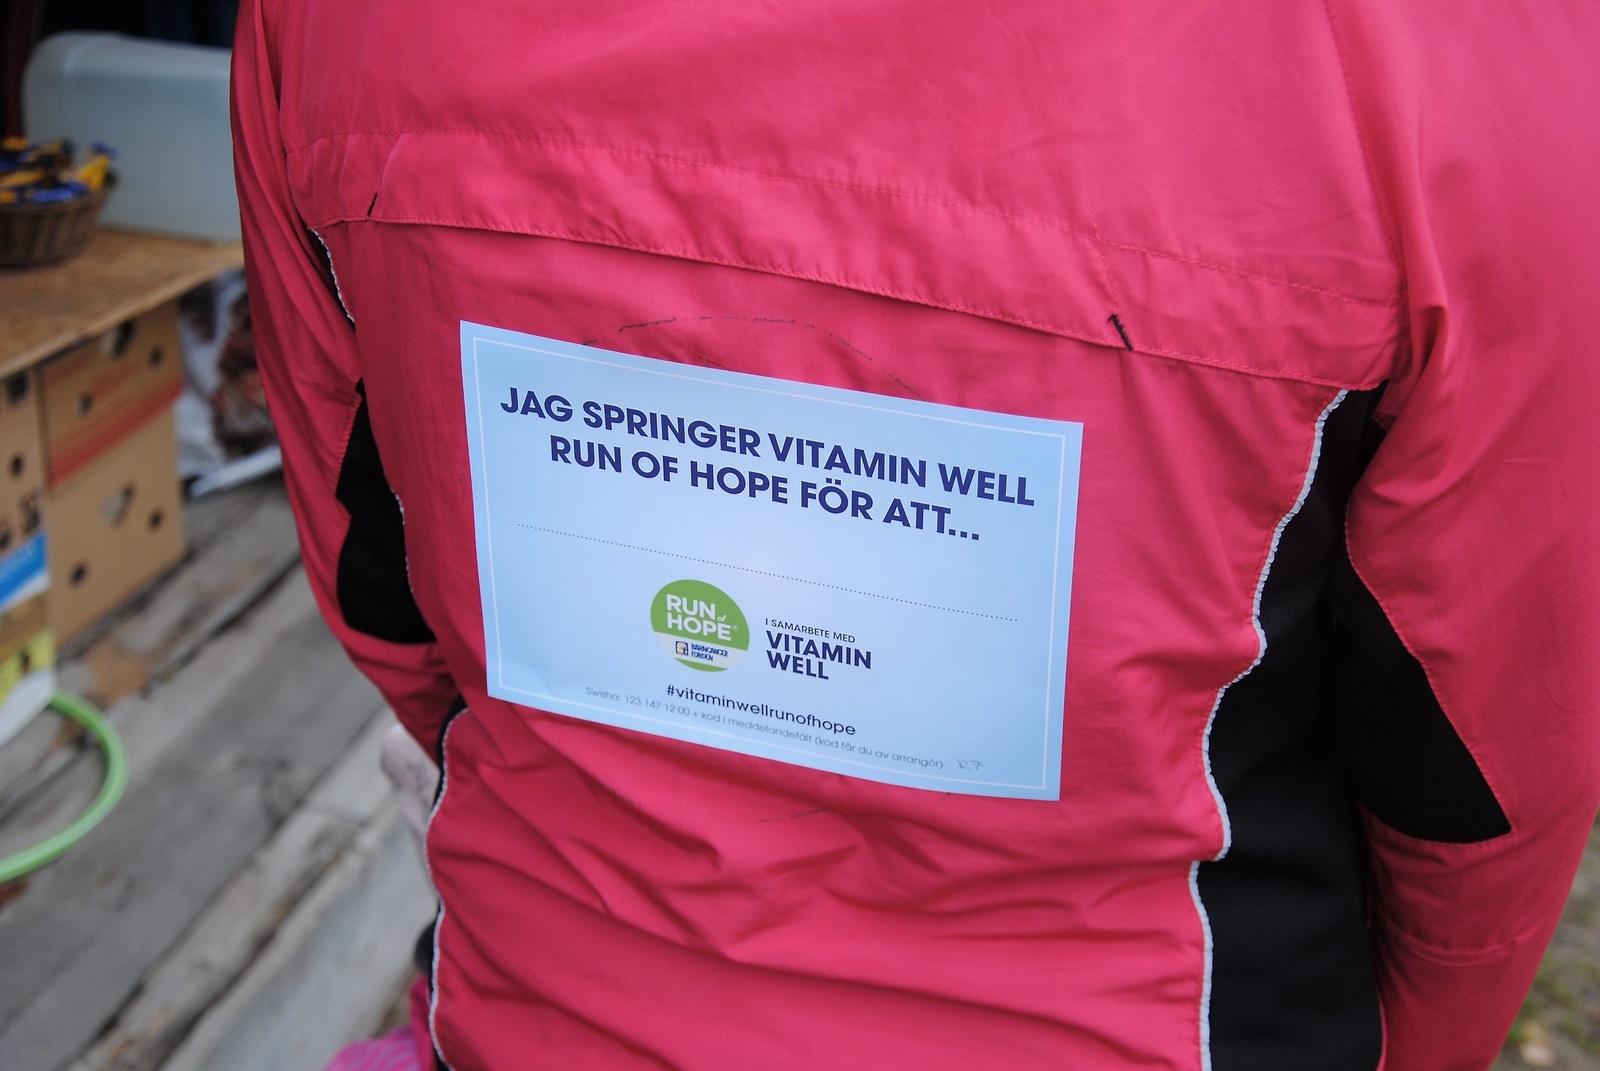 Alla löpare utrustades med lappar, som visar att de deltar i Run of Hope.                                                          Foto: Stefan Olofson